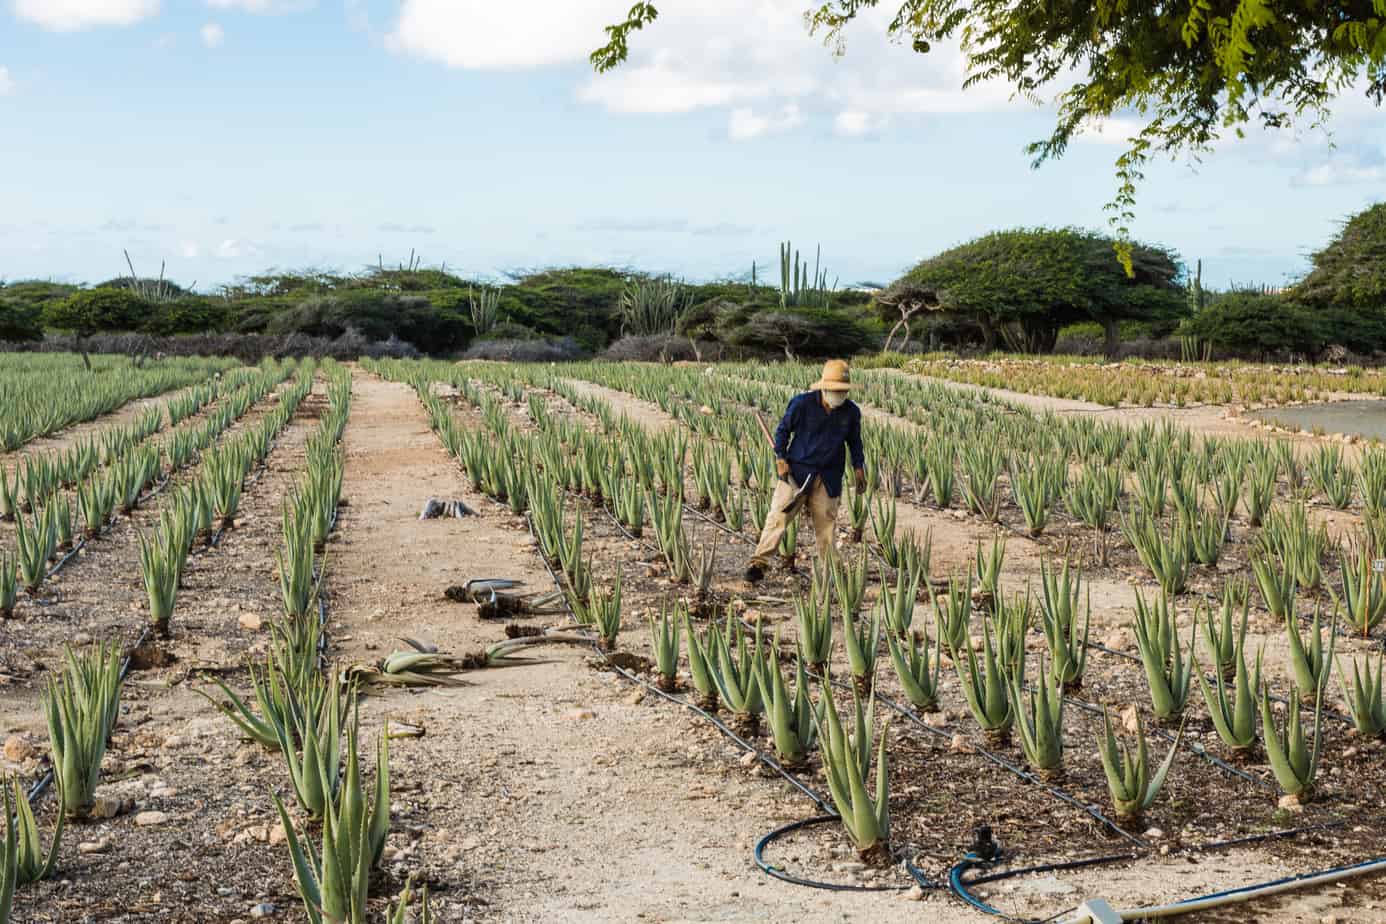 Aruba Aloe Vera Farm Worker